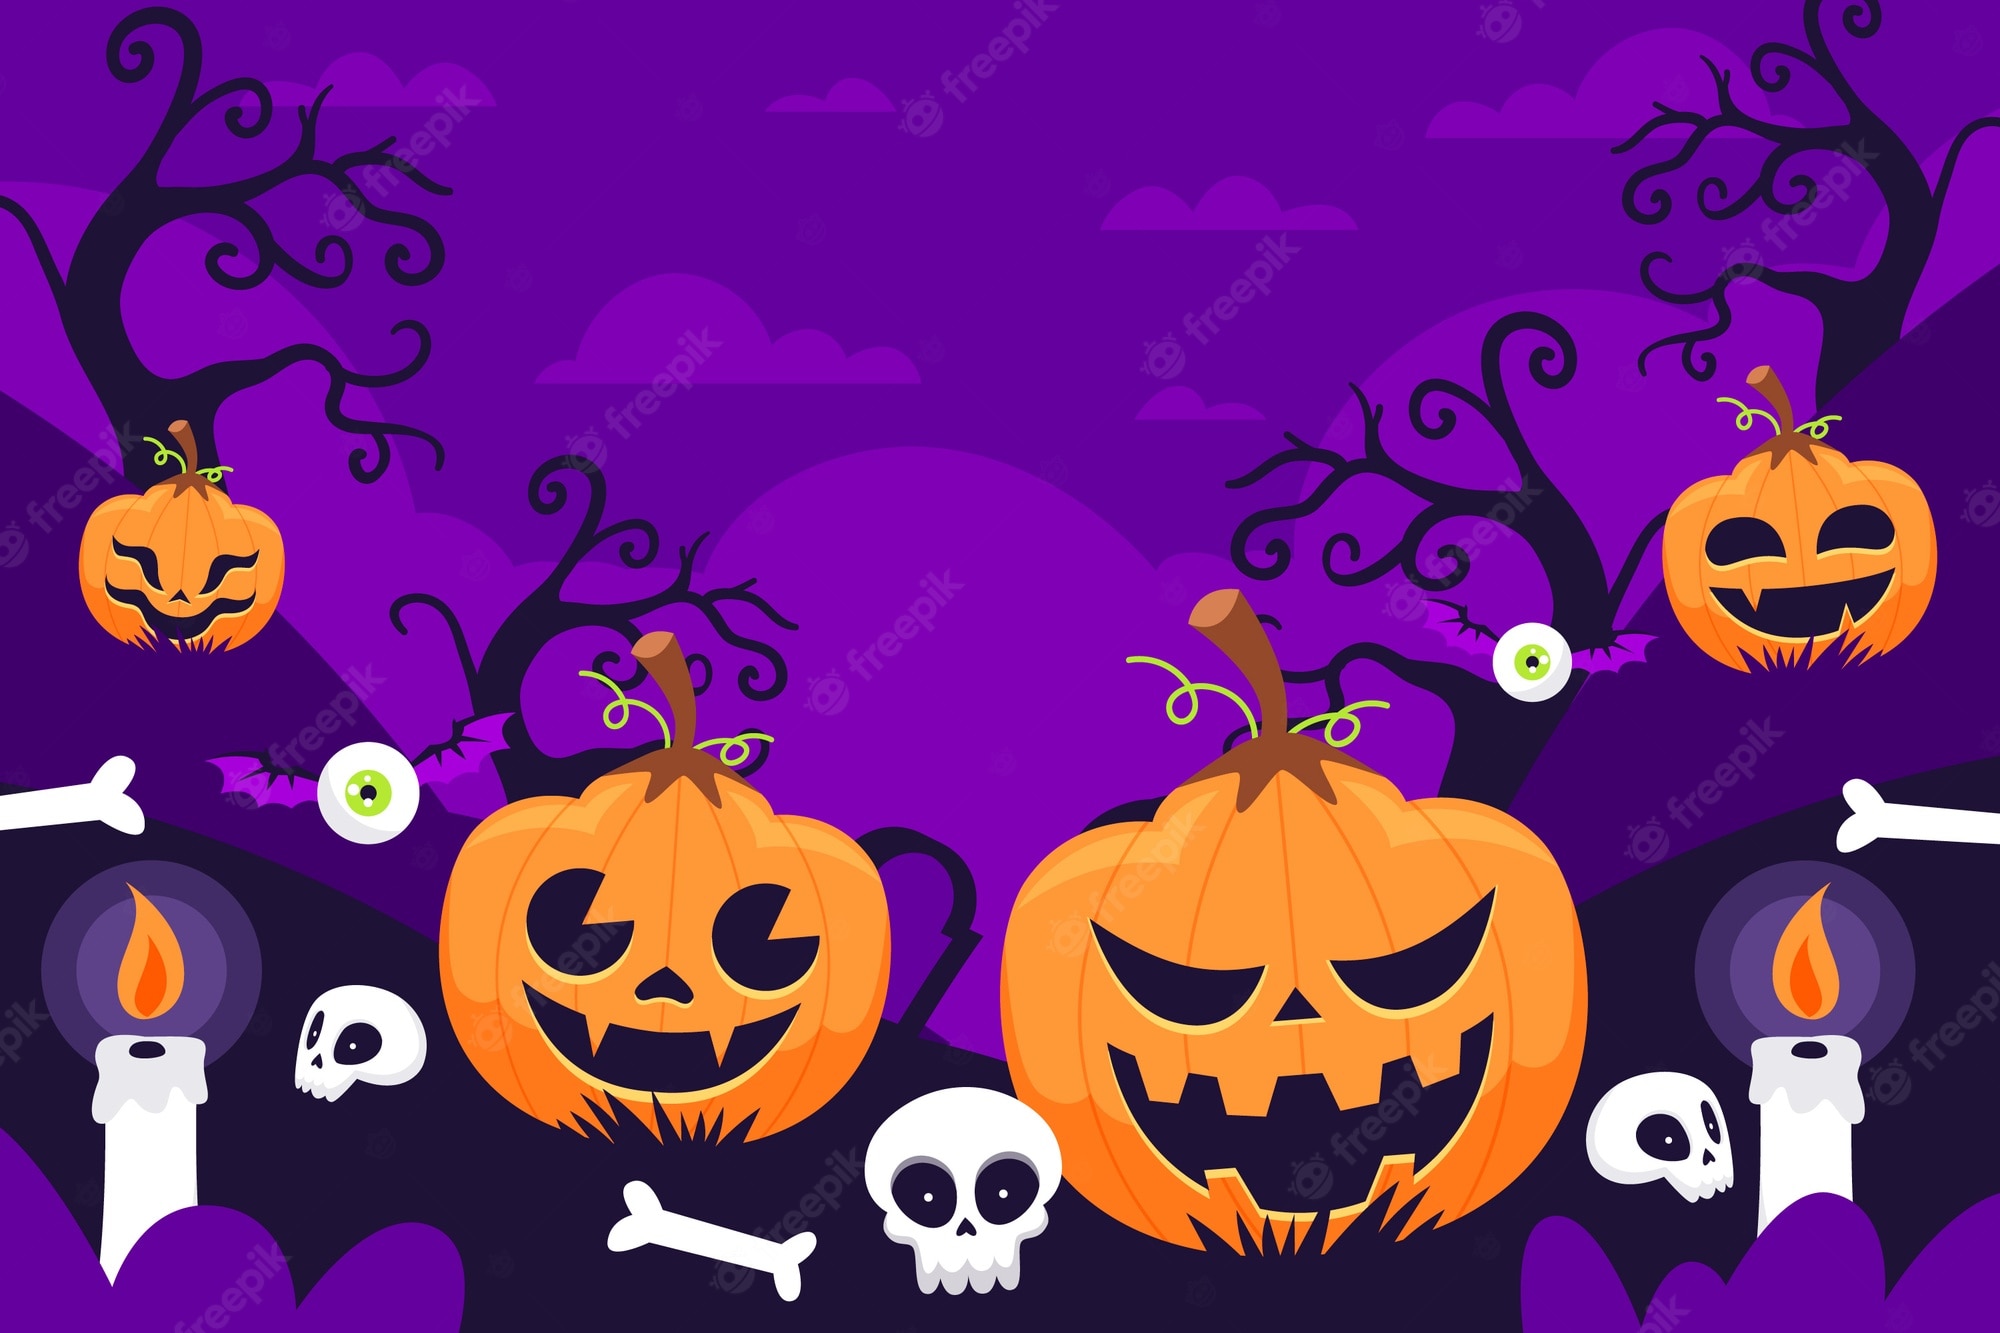 Spooky wallpaper Image. Free Vectors, & PSD